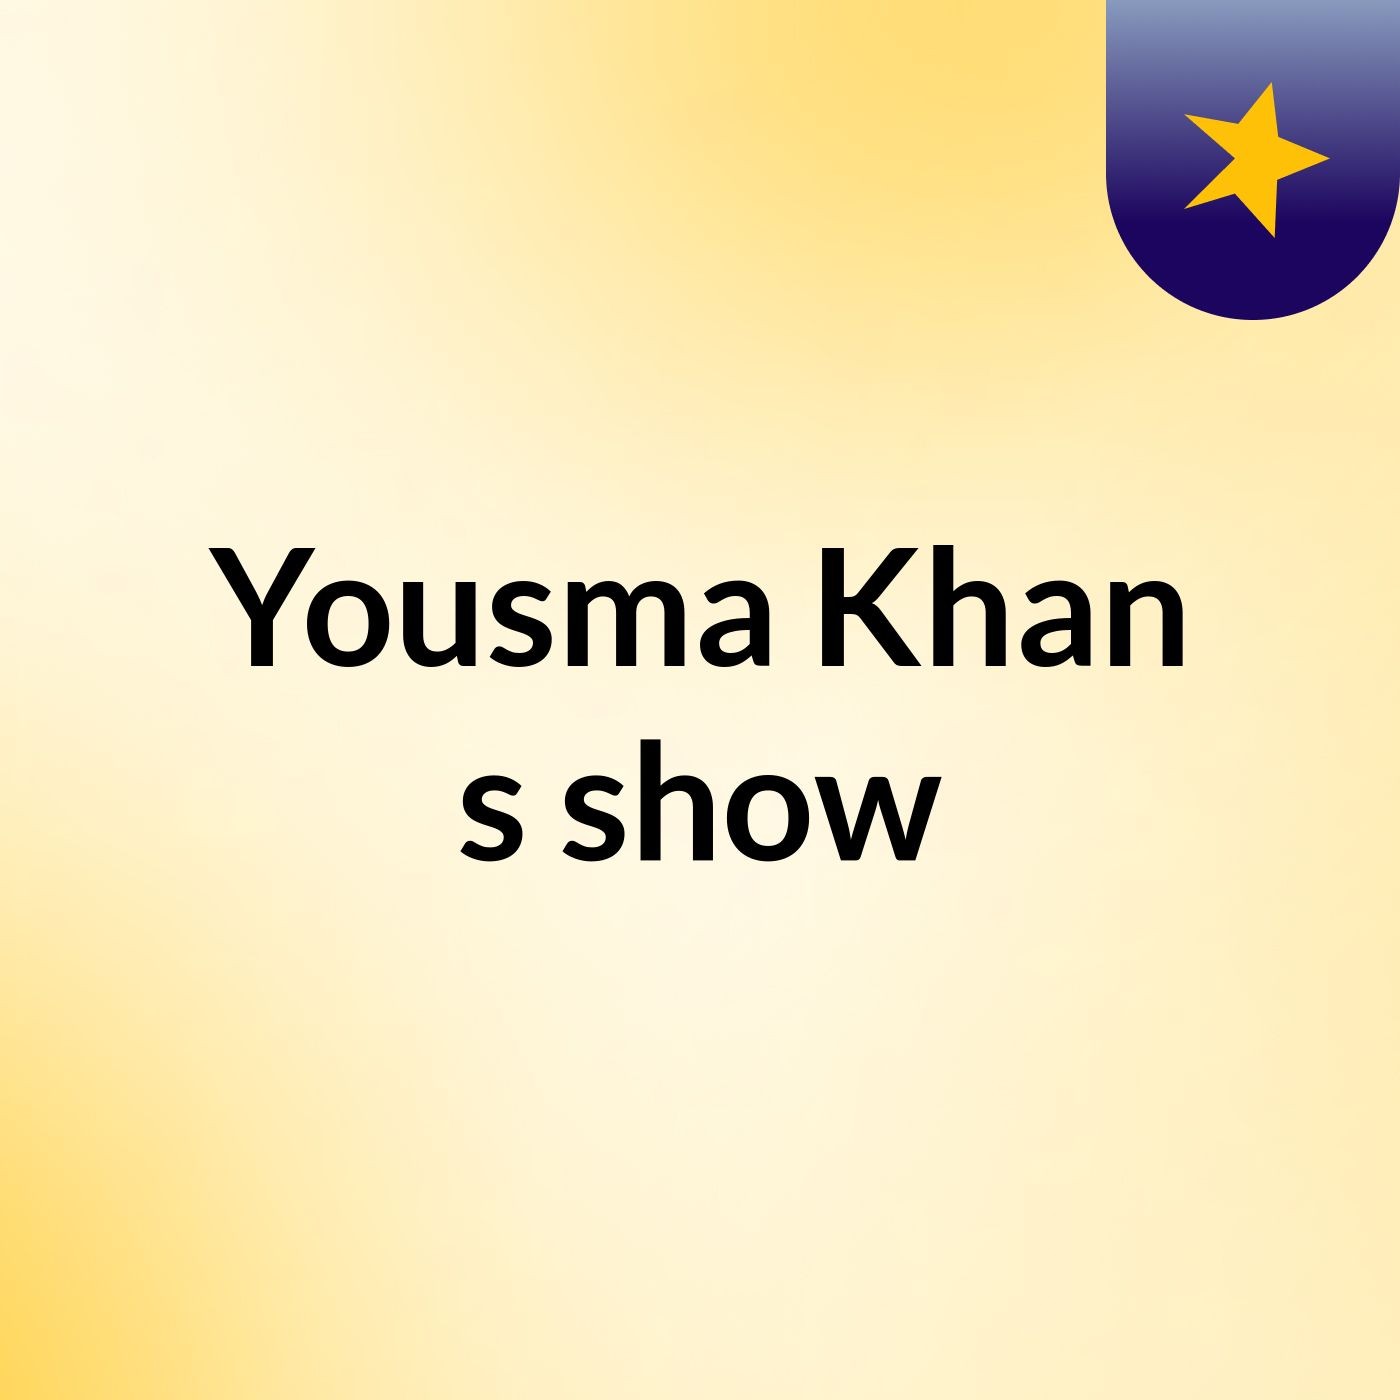 Yousma Khan's show